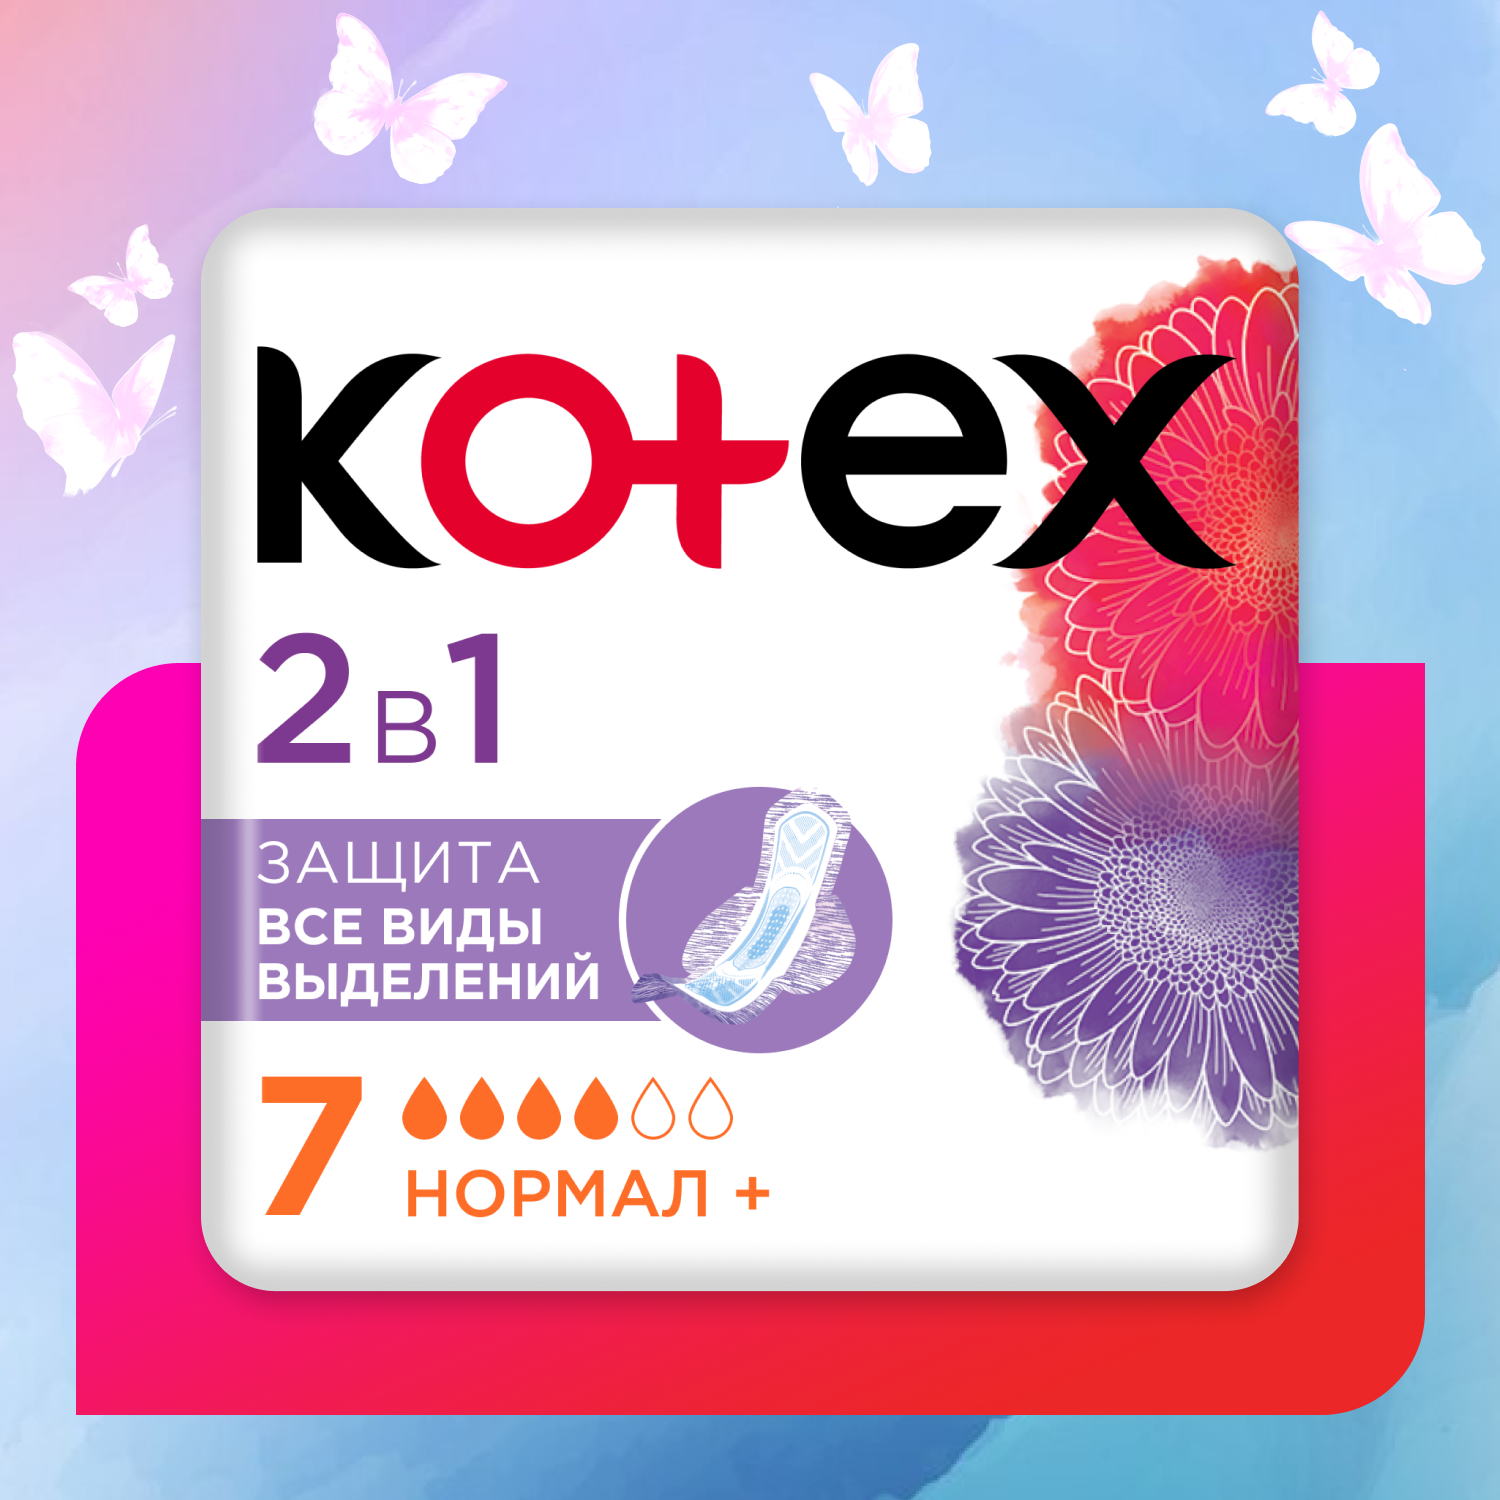 Прокладки Kotex 2в1 Нормал+ 7шт - фото 1